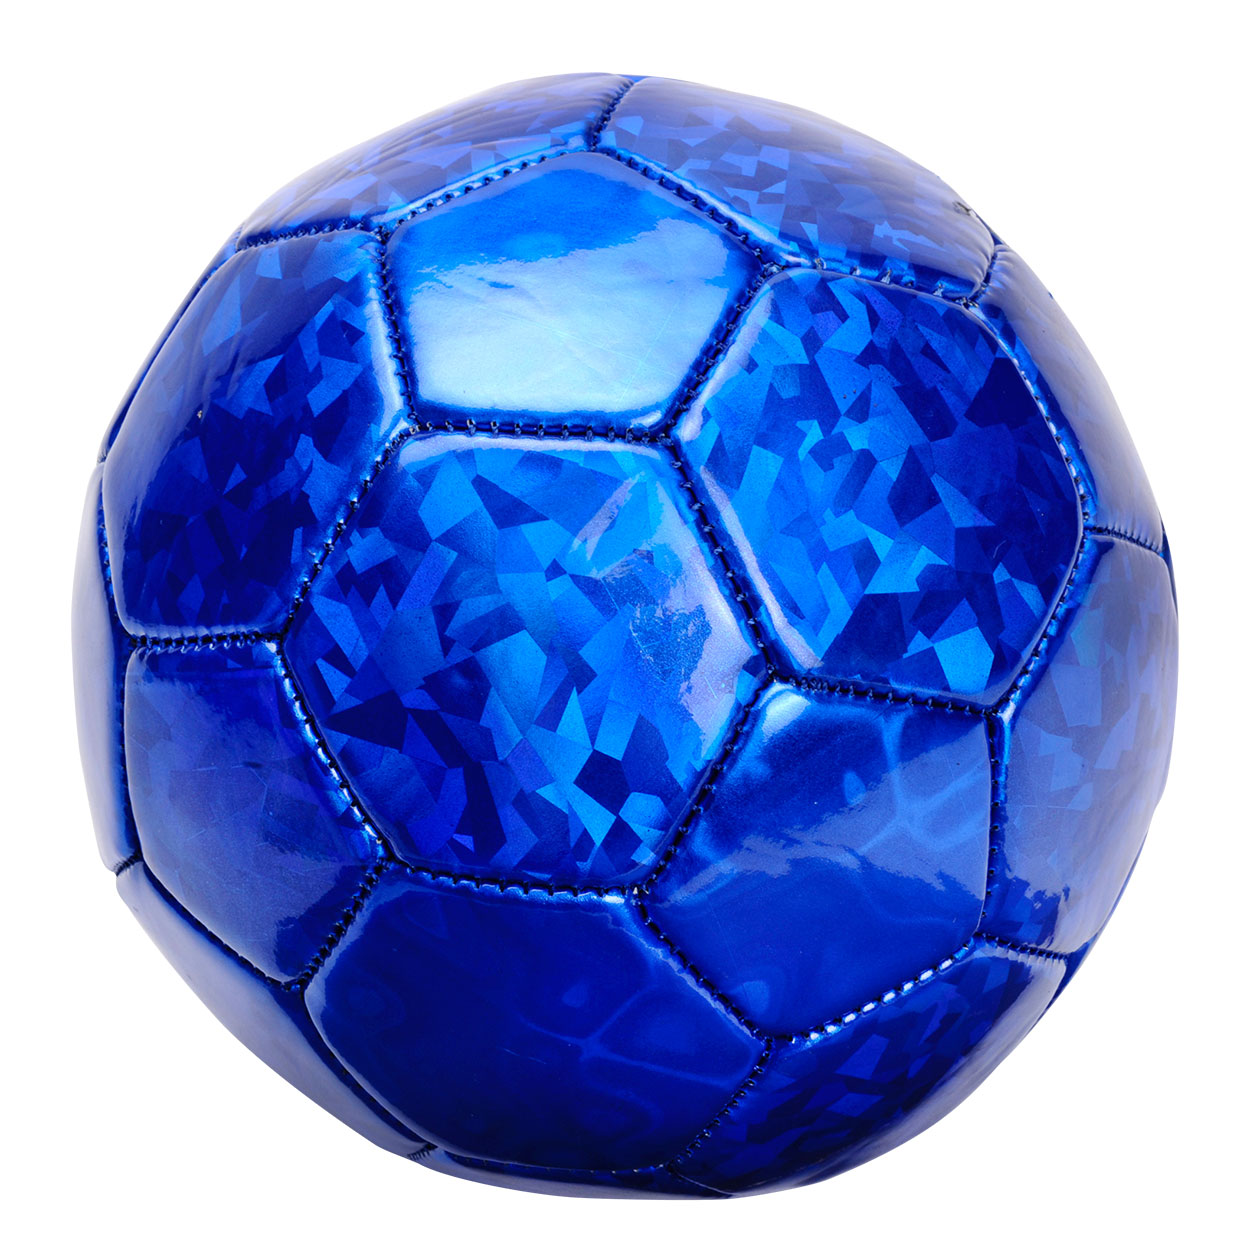 Voetbal Metallic | Thimble Toys